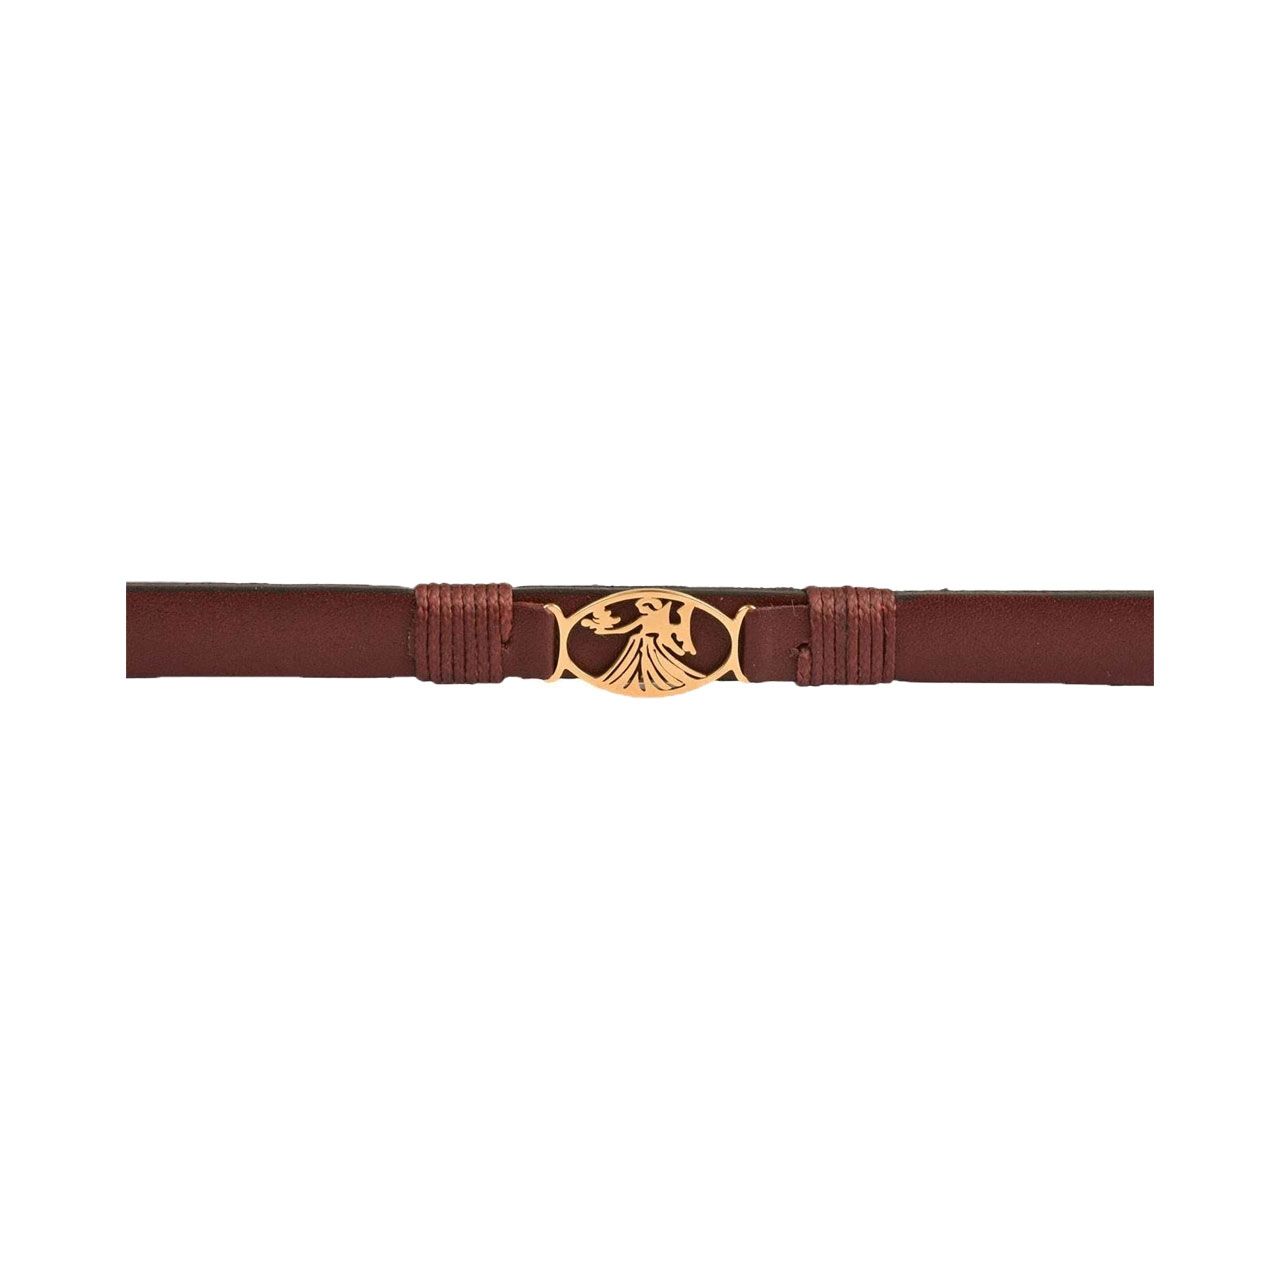 دستبند زنانه پارینه چرم طرح تولد شهریور مدل  BR900104 -  - 5